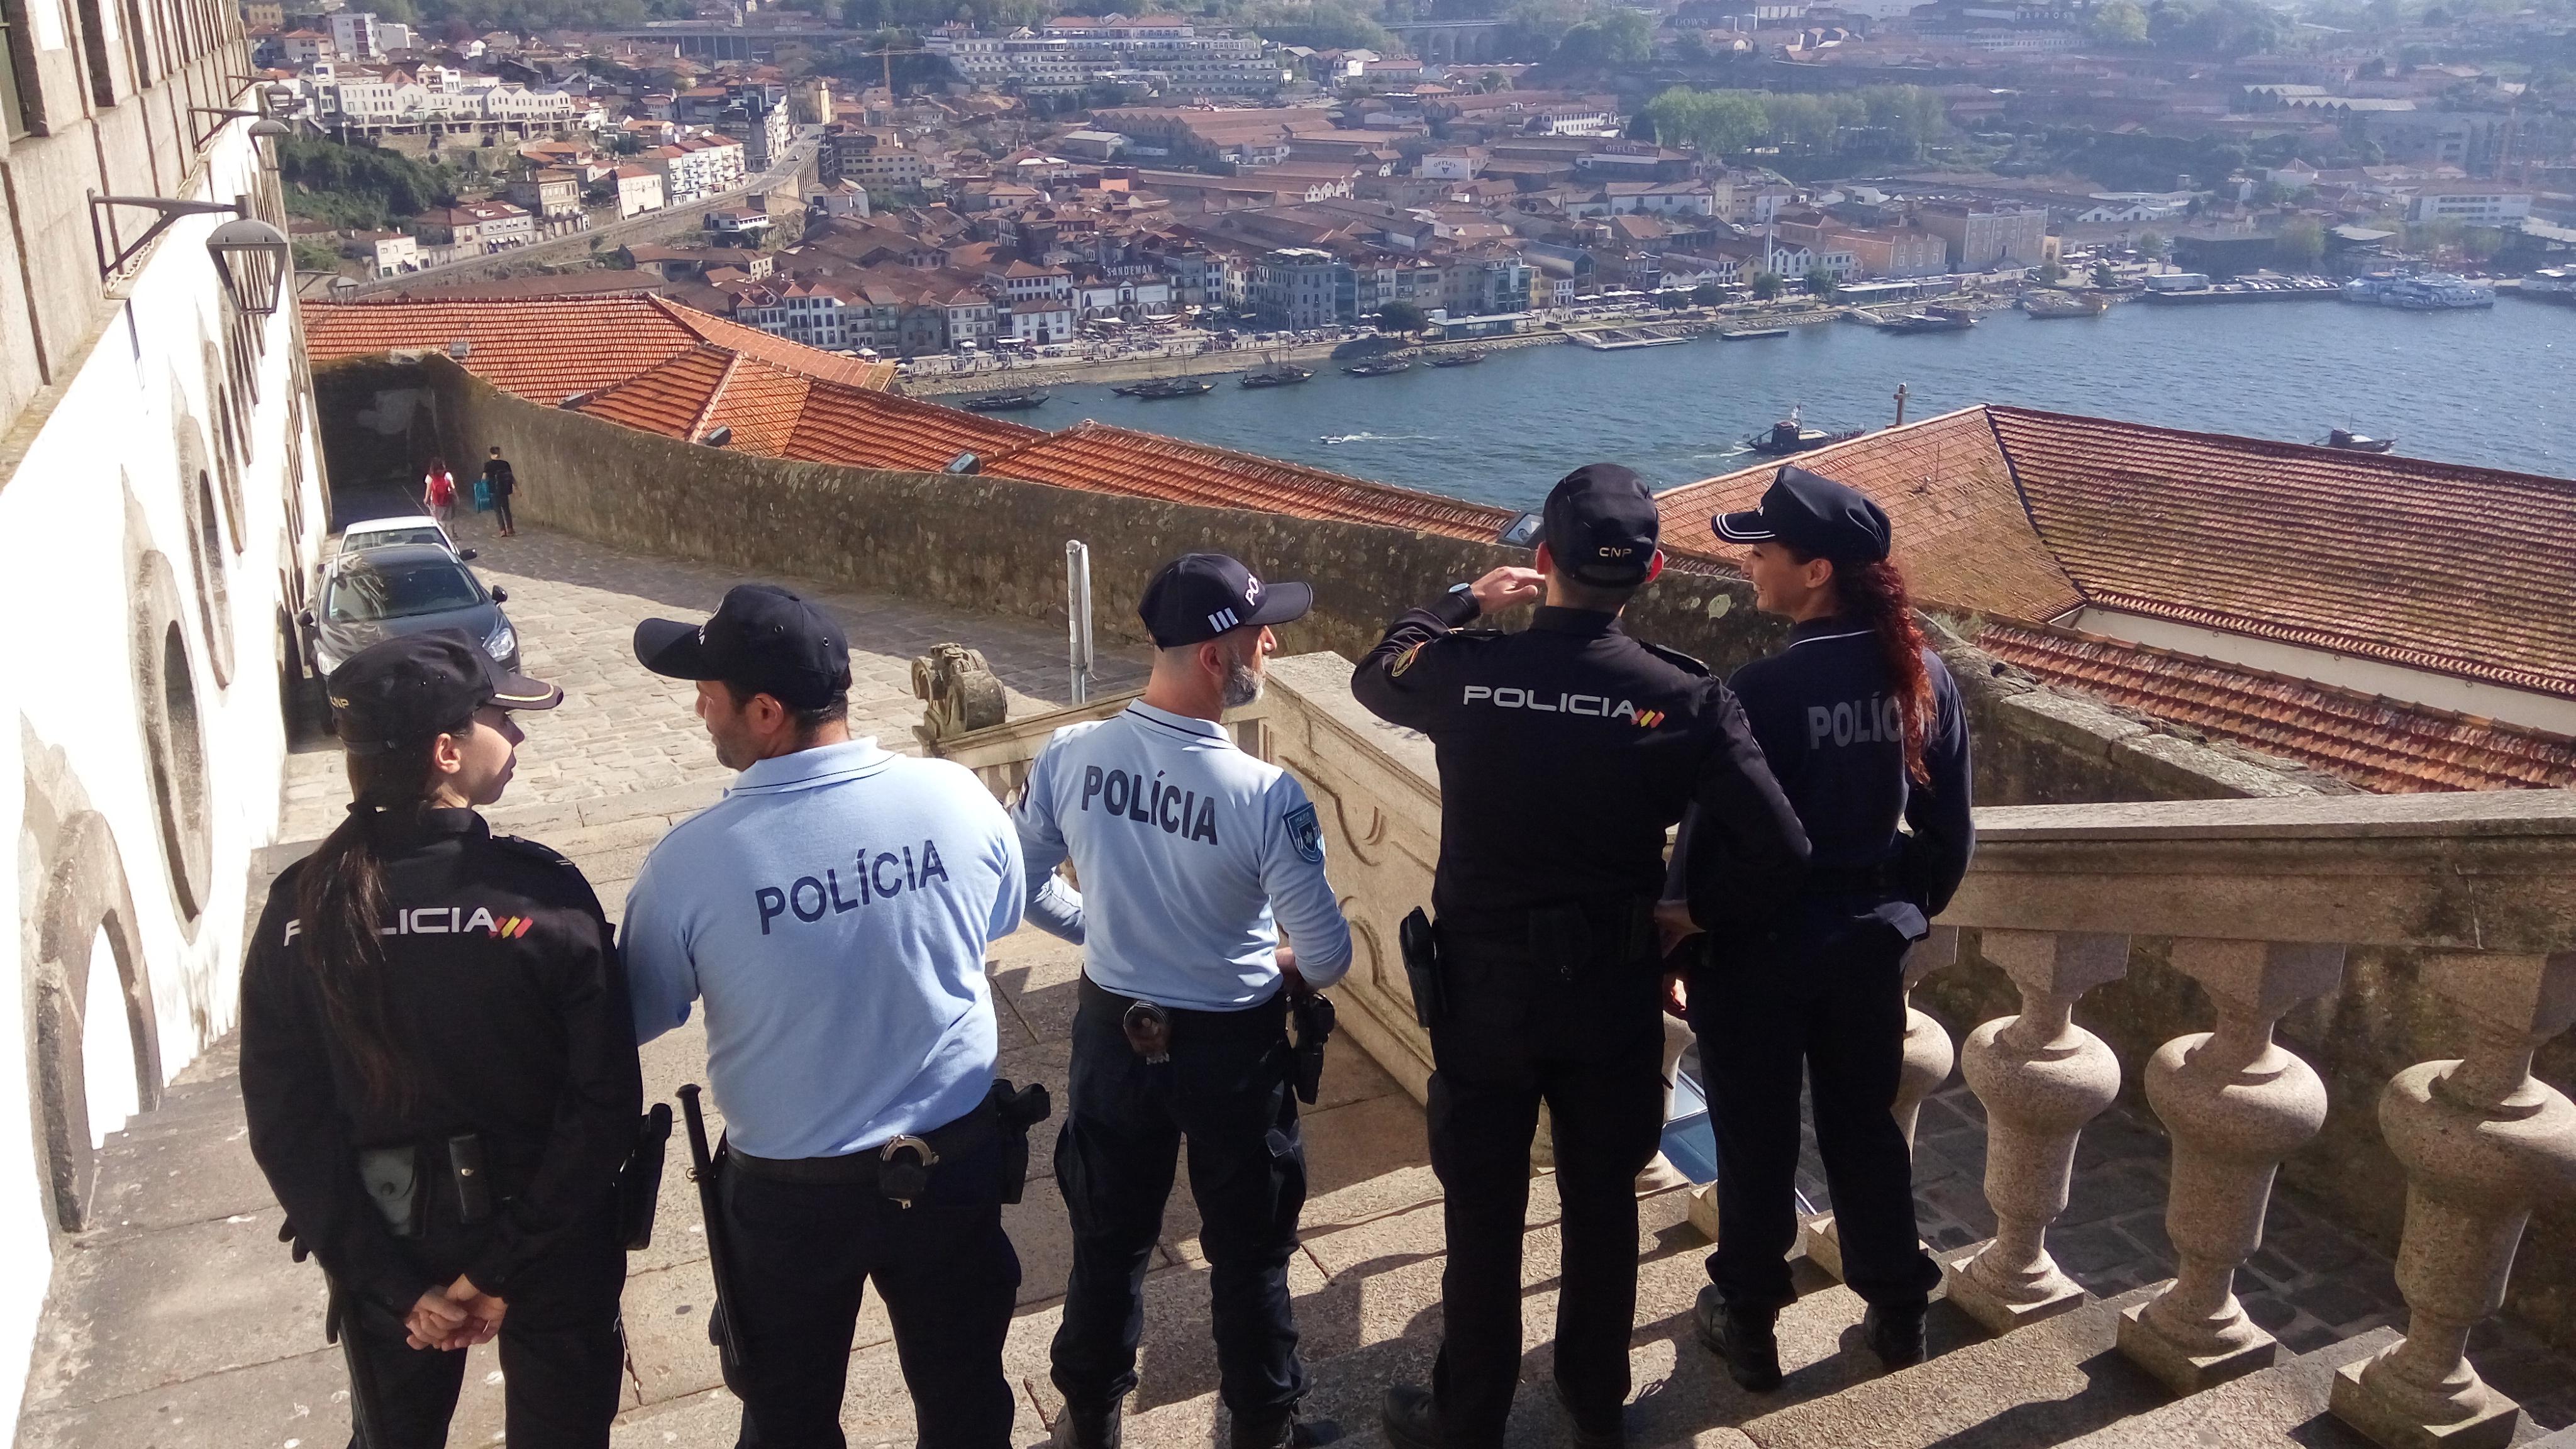 5 policías, de España y Portugal, patrullando juntos en Oporto.